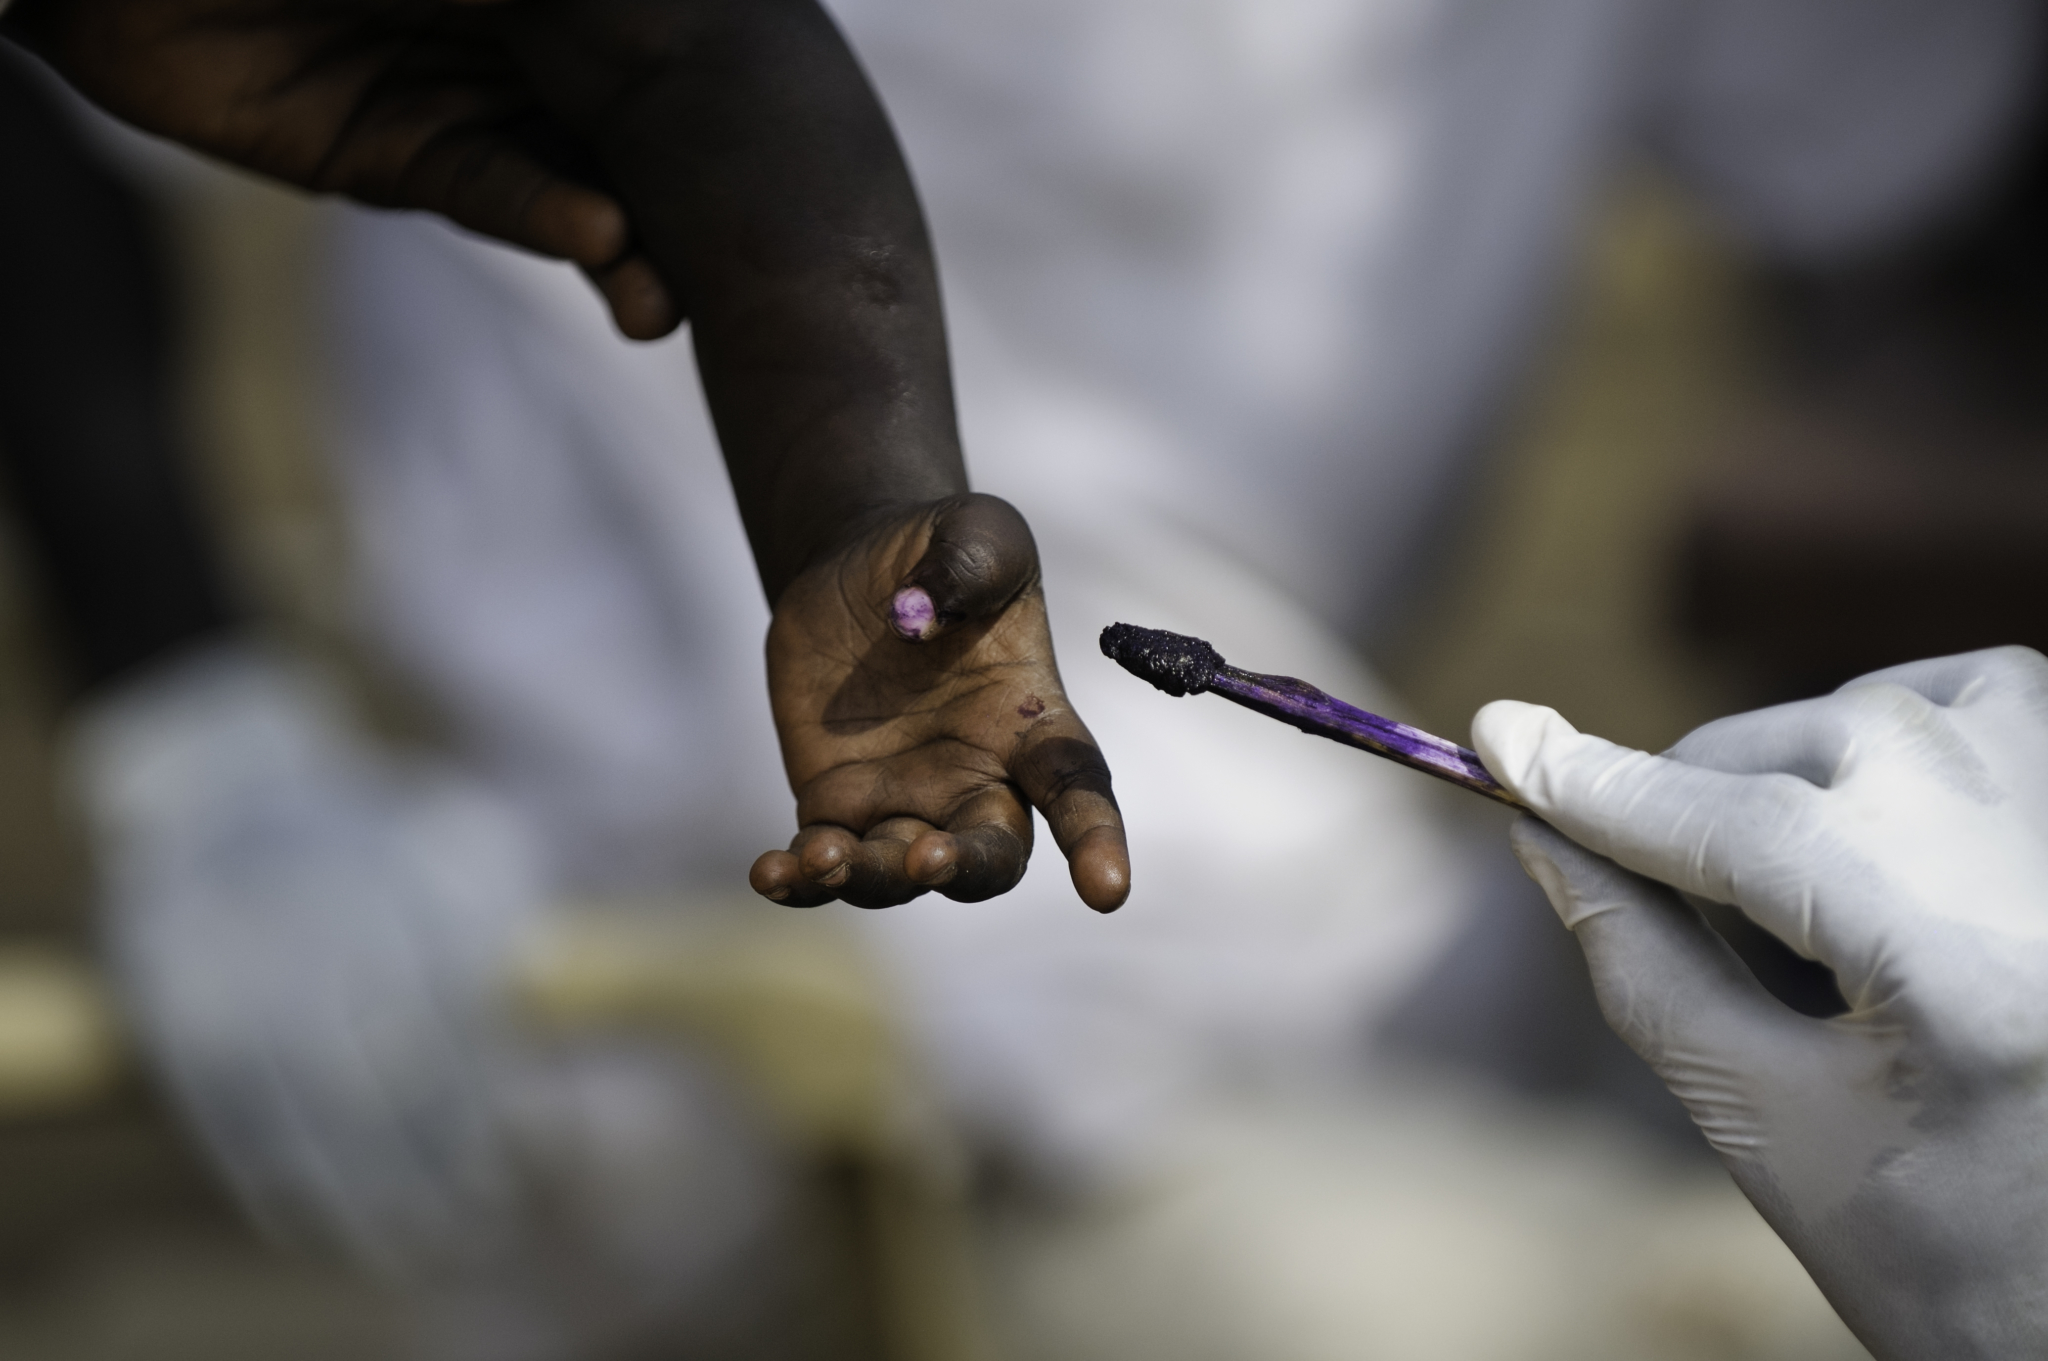 No acampamento de Doro, cerca de 14.500 crianças foram vacinadas contra o sarampo. Depois de vacinadas, as crianças recebem uma marca com tinta para saber que já estão imunizadas.